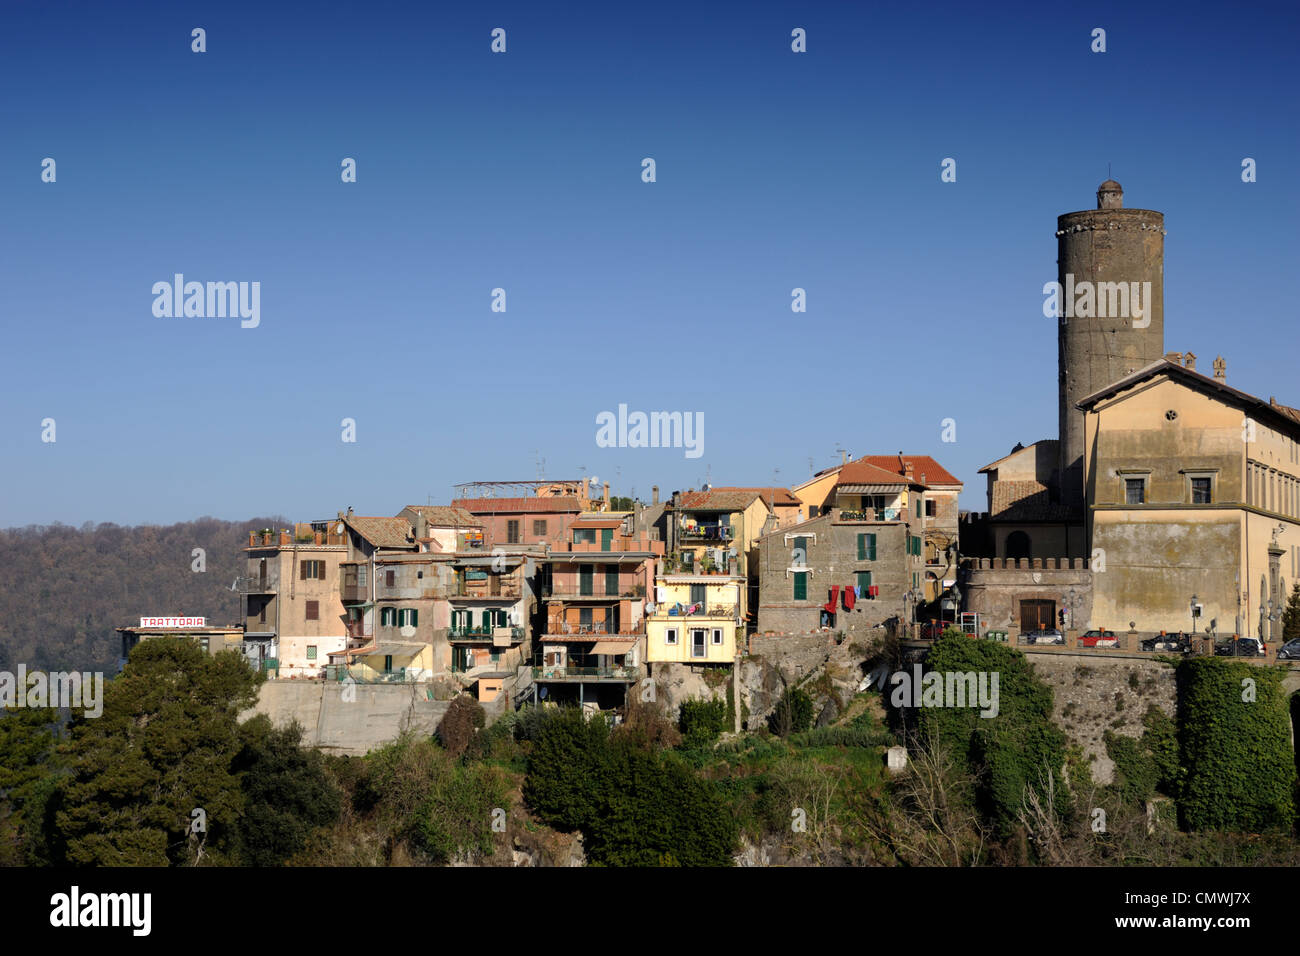 Italia, Lazio, nemi village Foto de stock